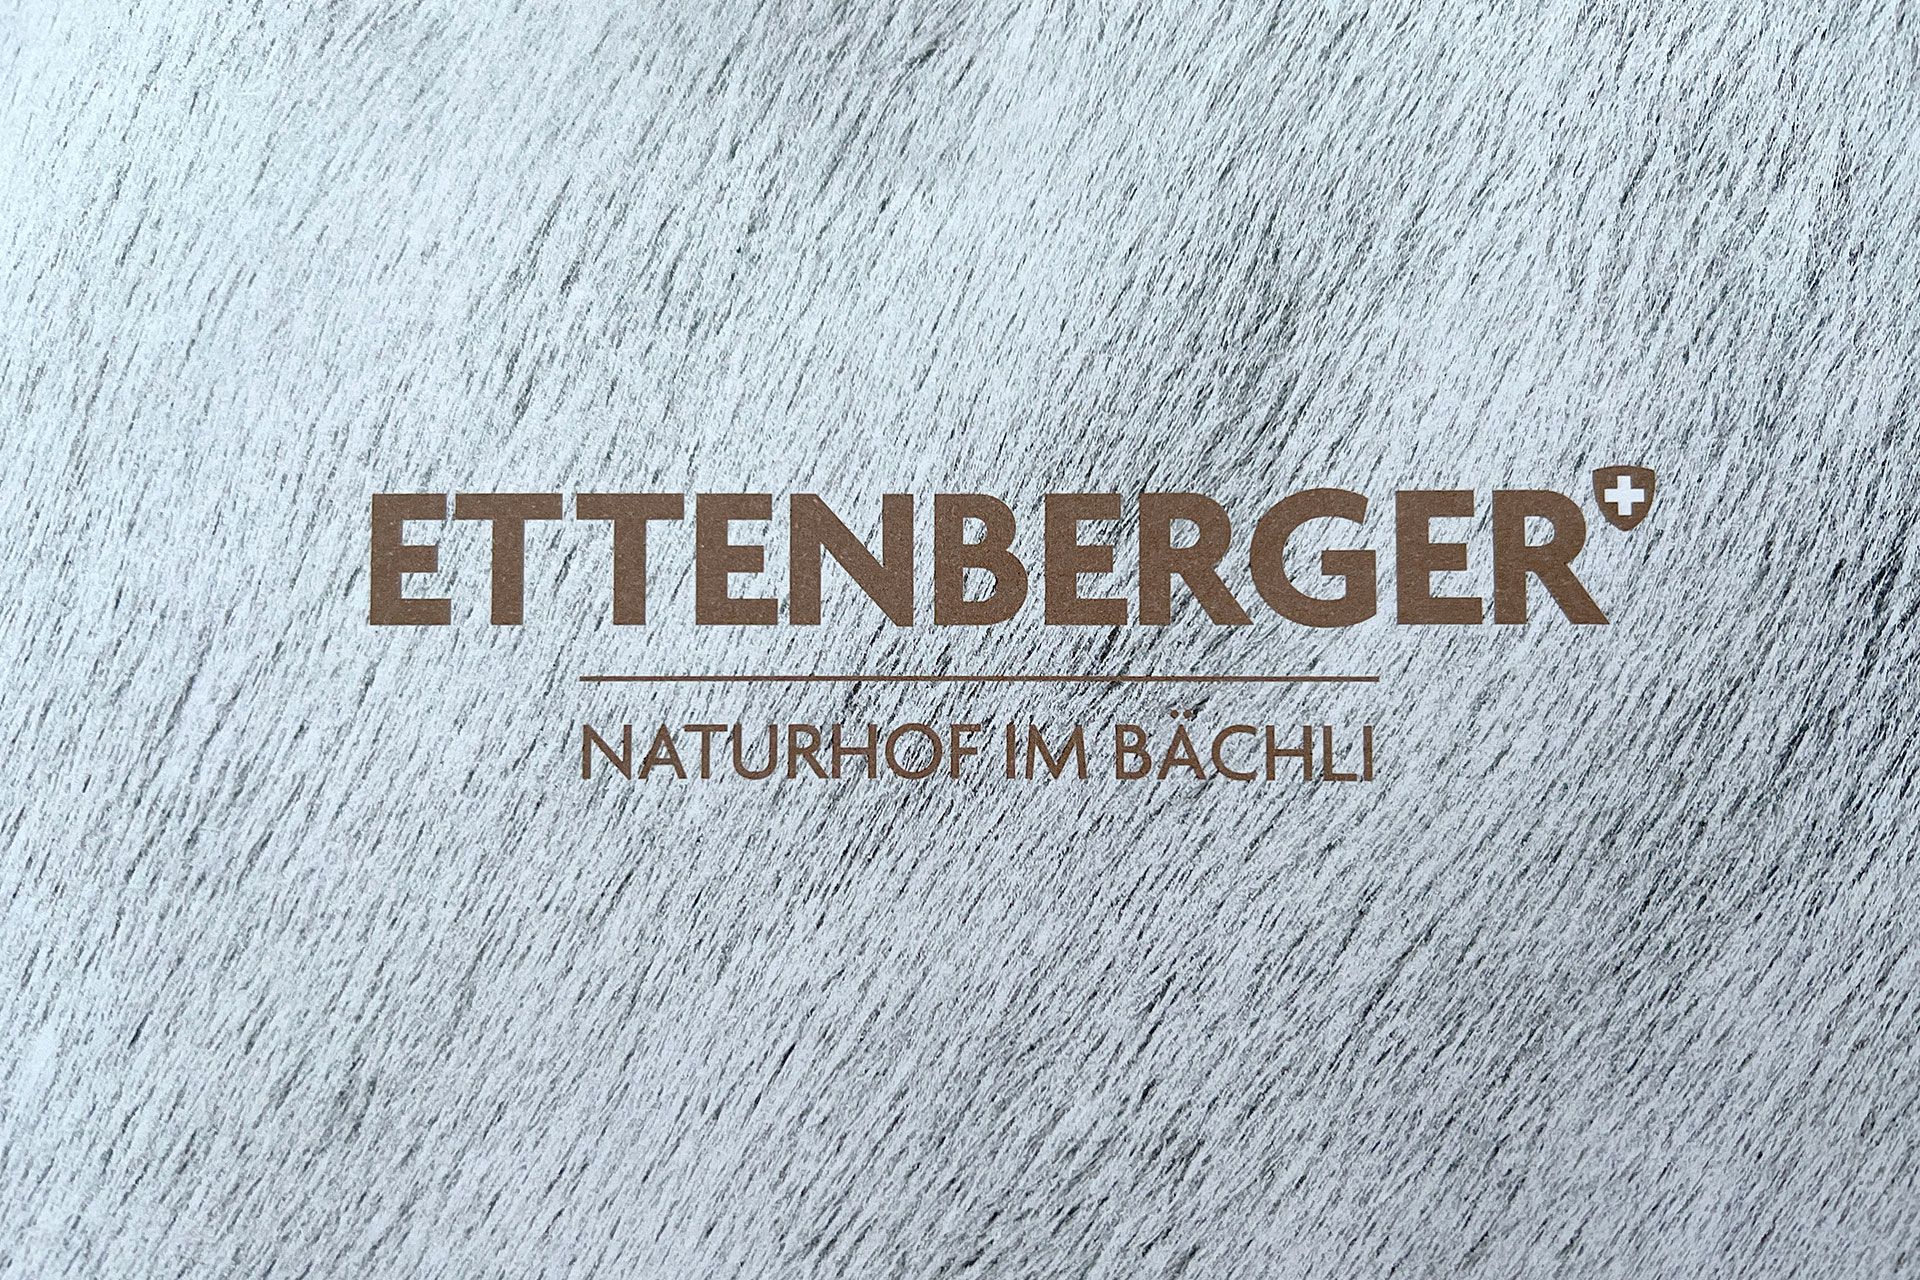 Ettenberger